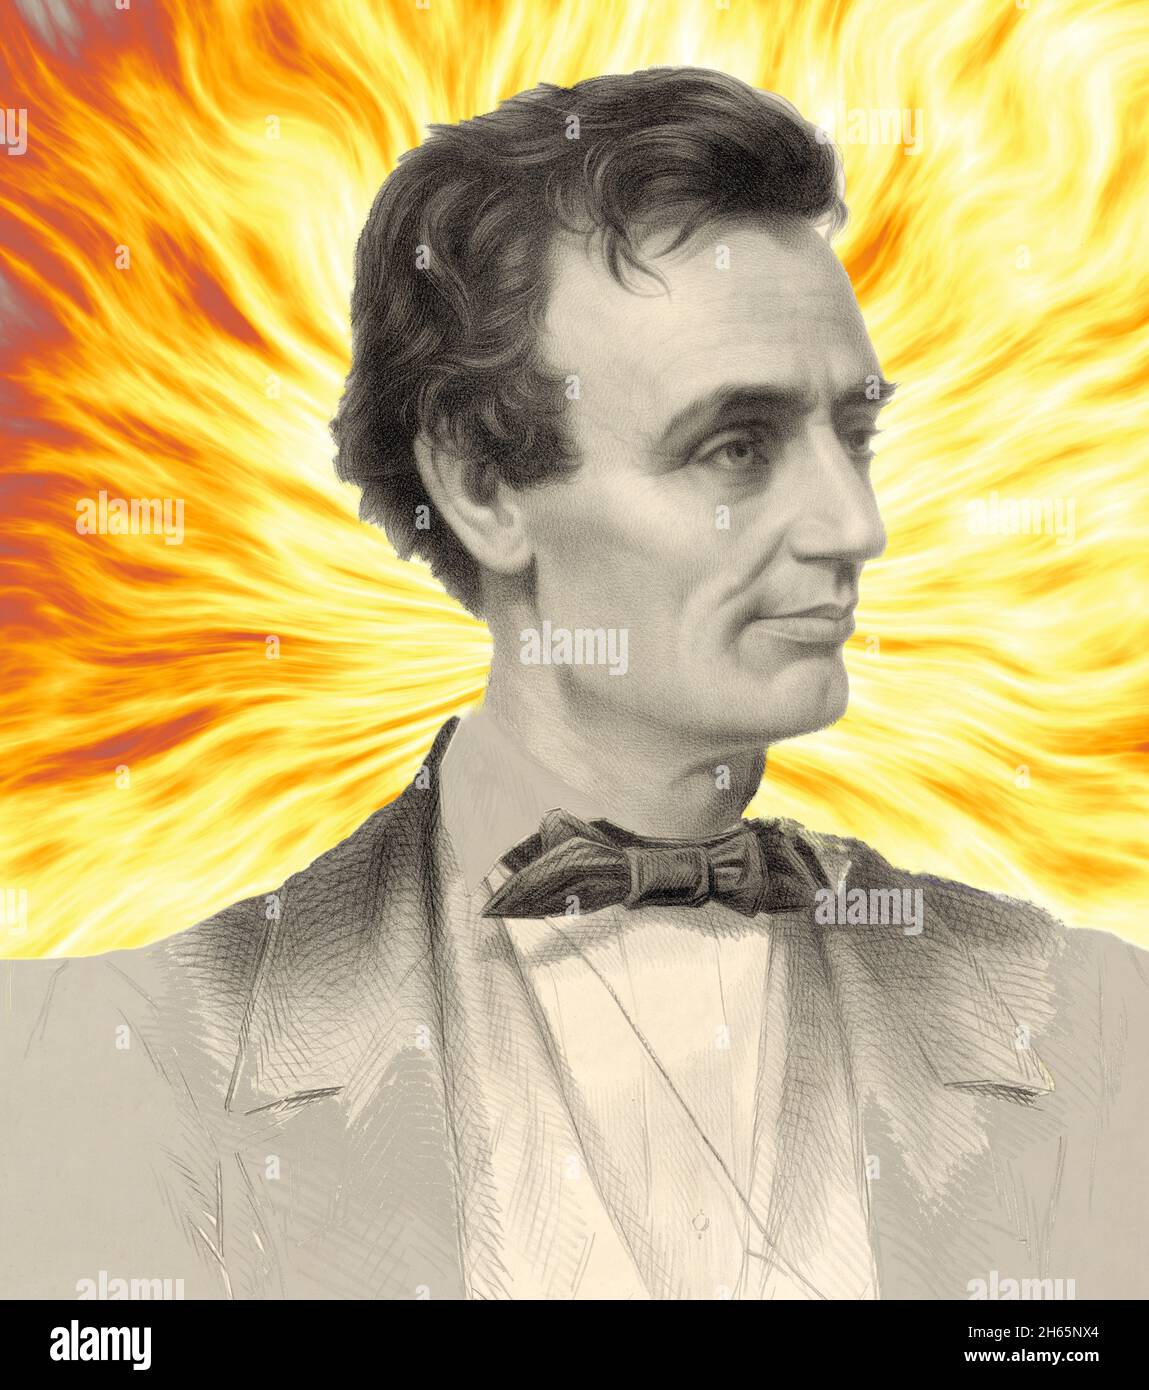 Portrait multimédia mixte d'un jeune Abraham Lincoln sur un fond ardent Banque D'Images